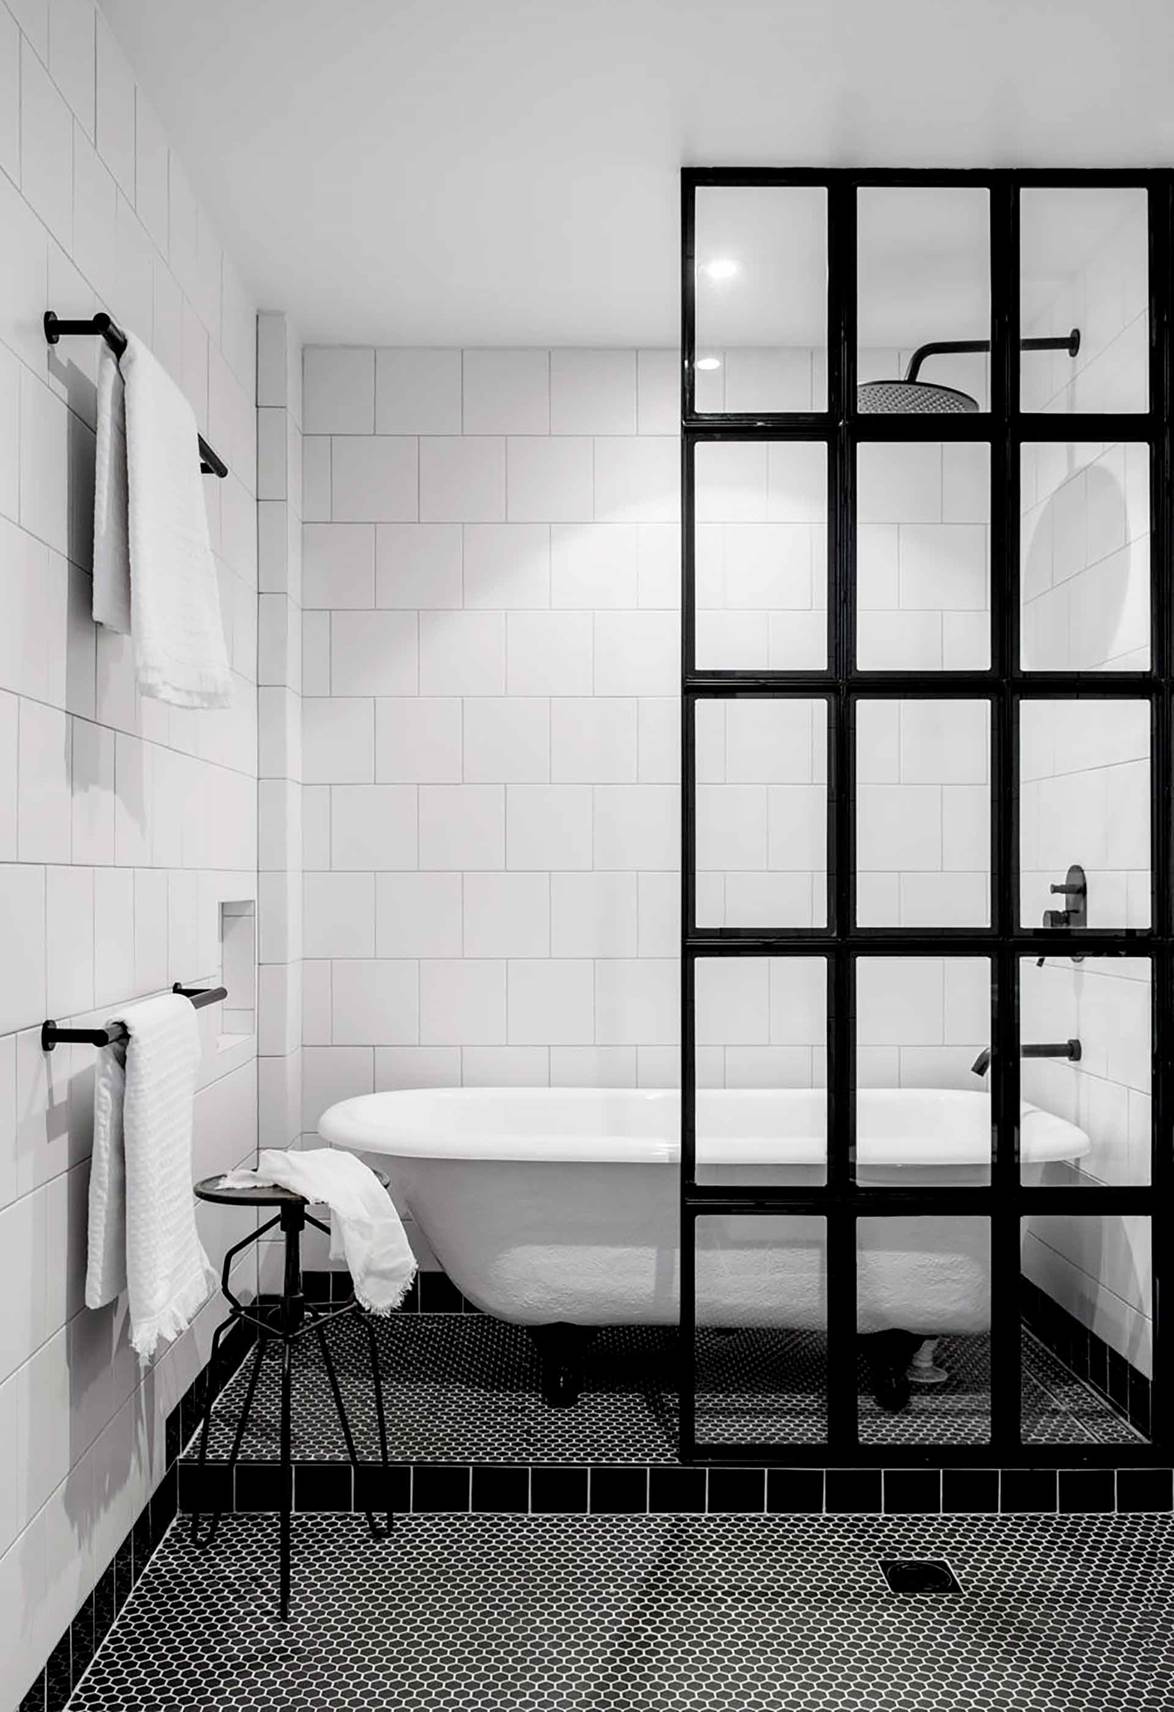 17 căn phòng tắm đen trắng dùng bao nhiêu năm vẫn thấy ưng mắt - Ảnh 5.